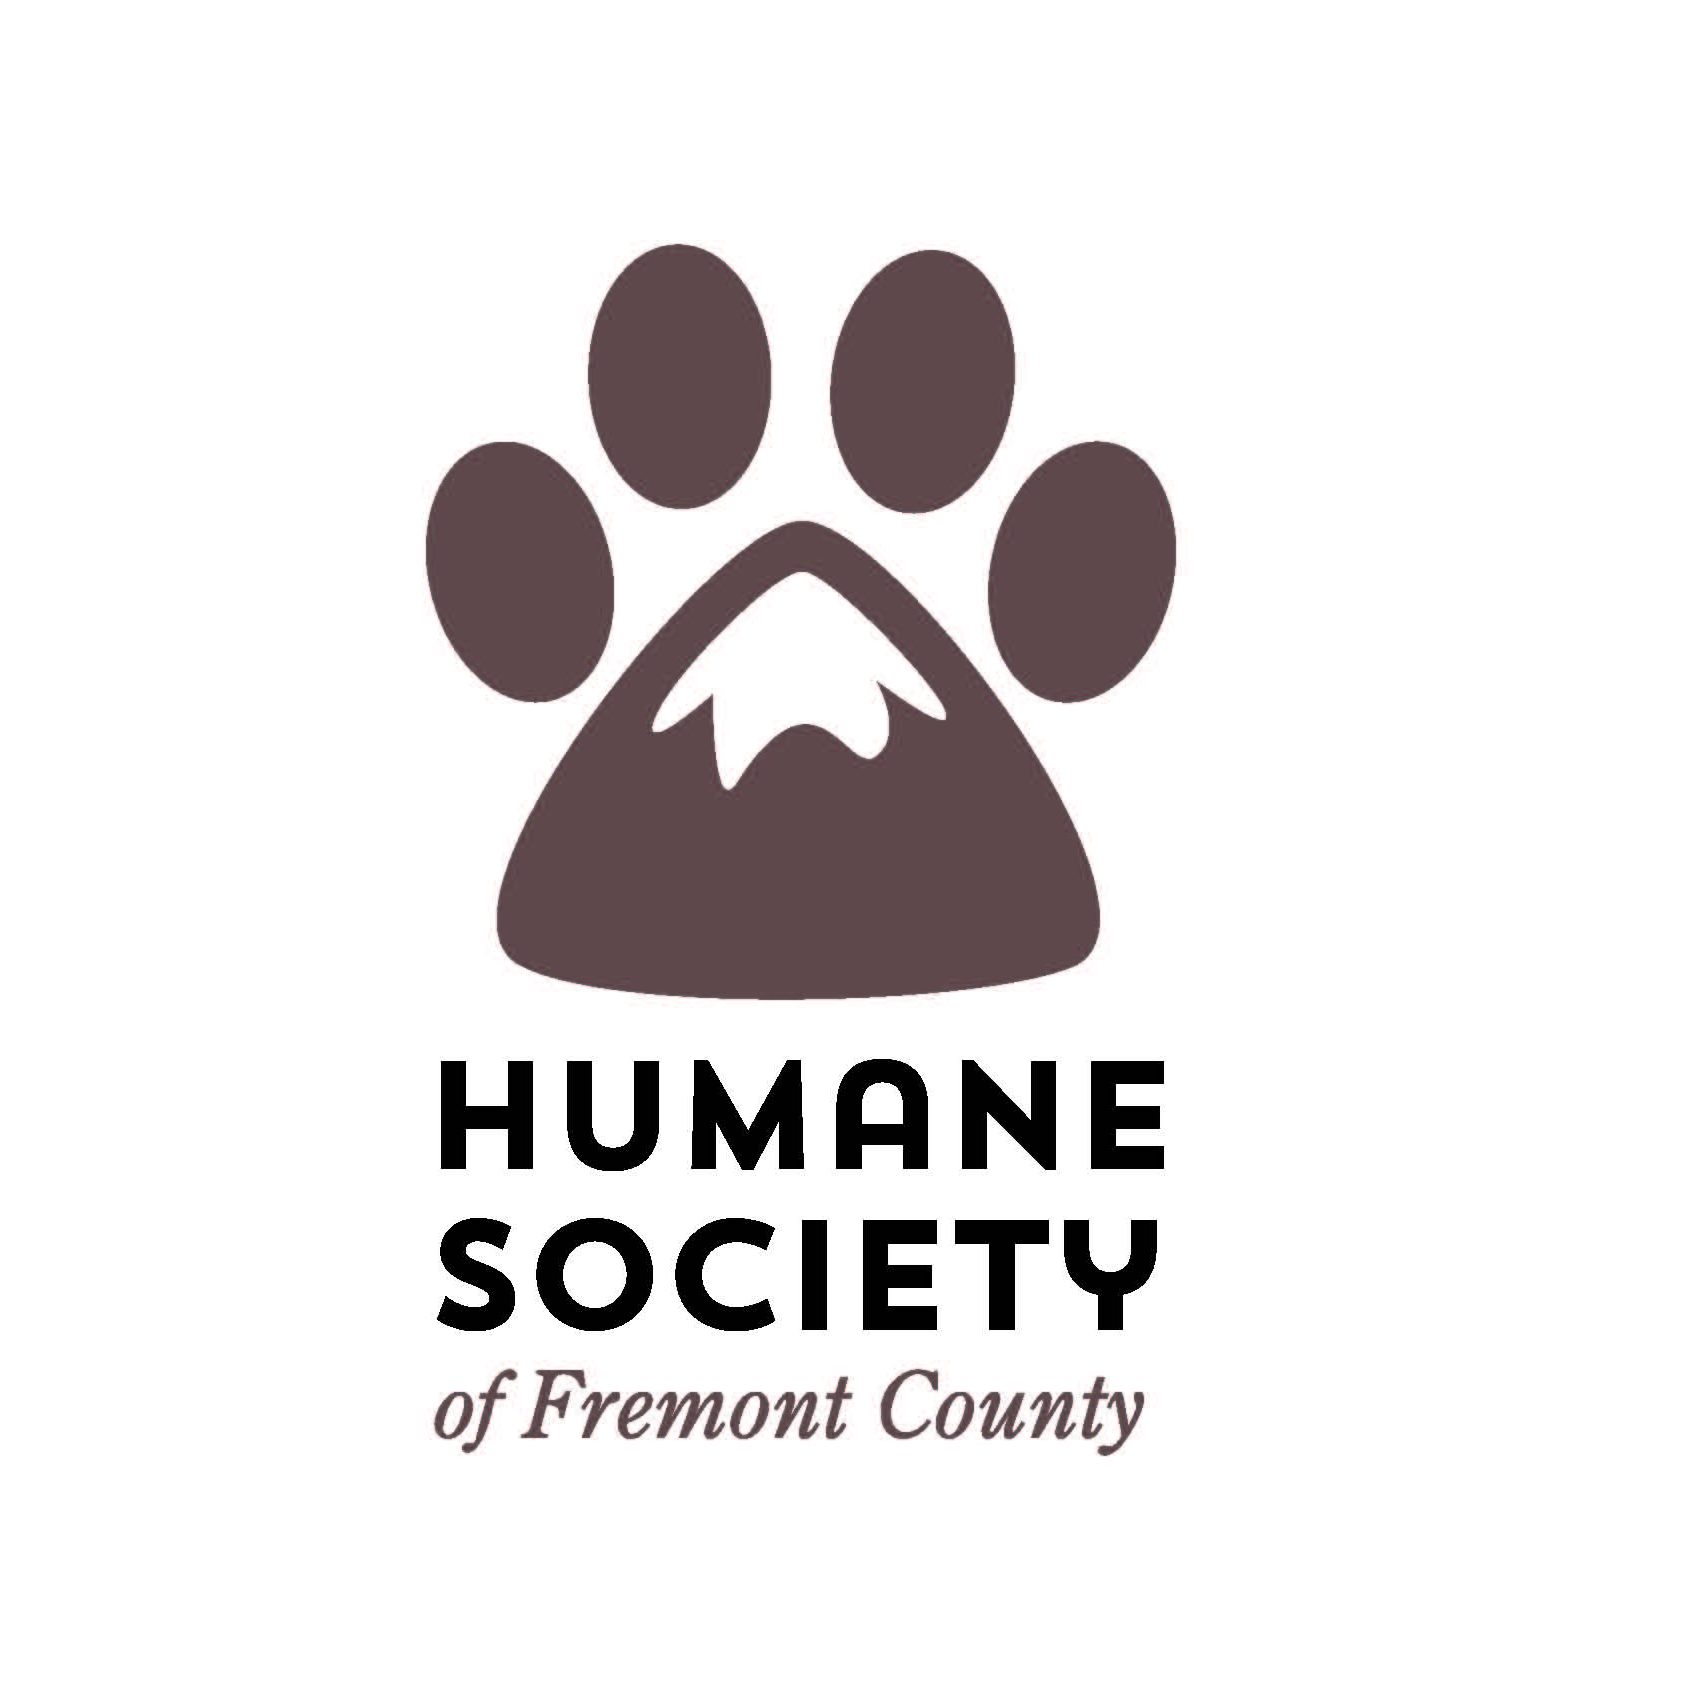 HumaneSocietyFremontCounty